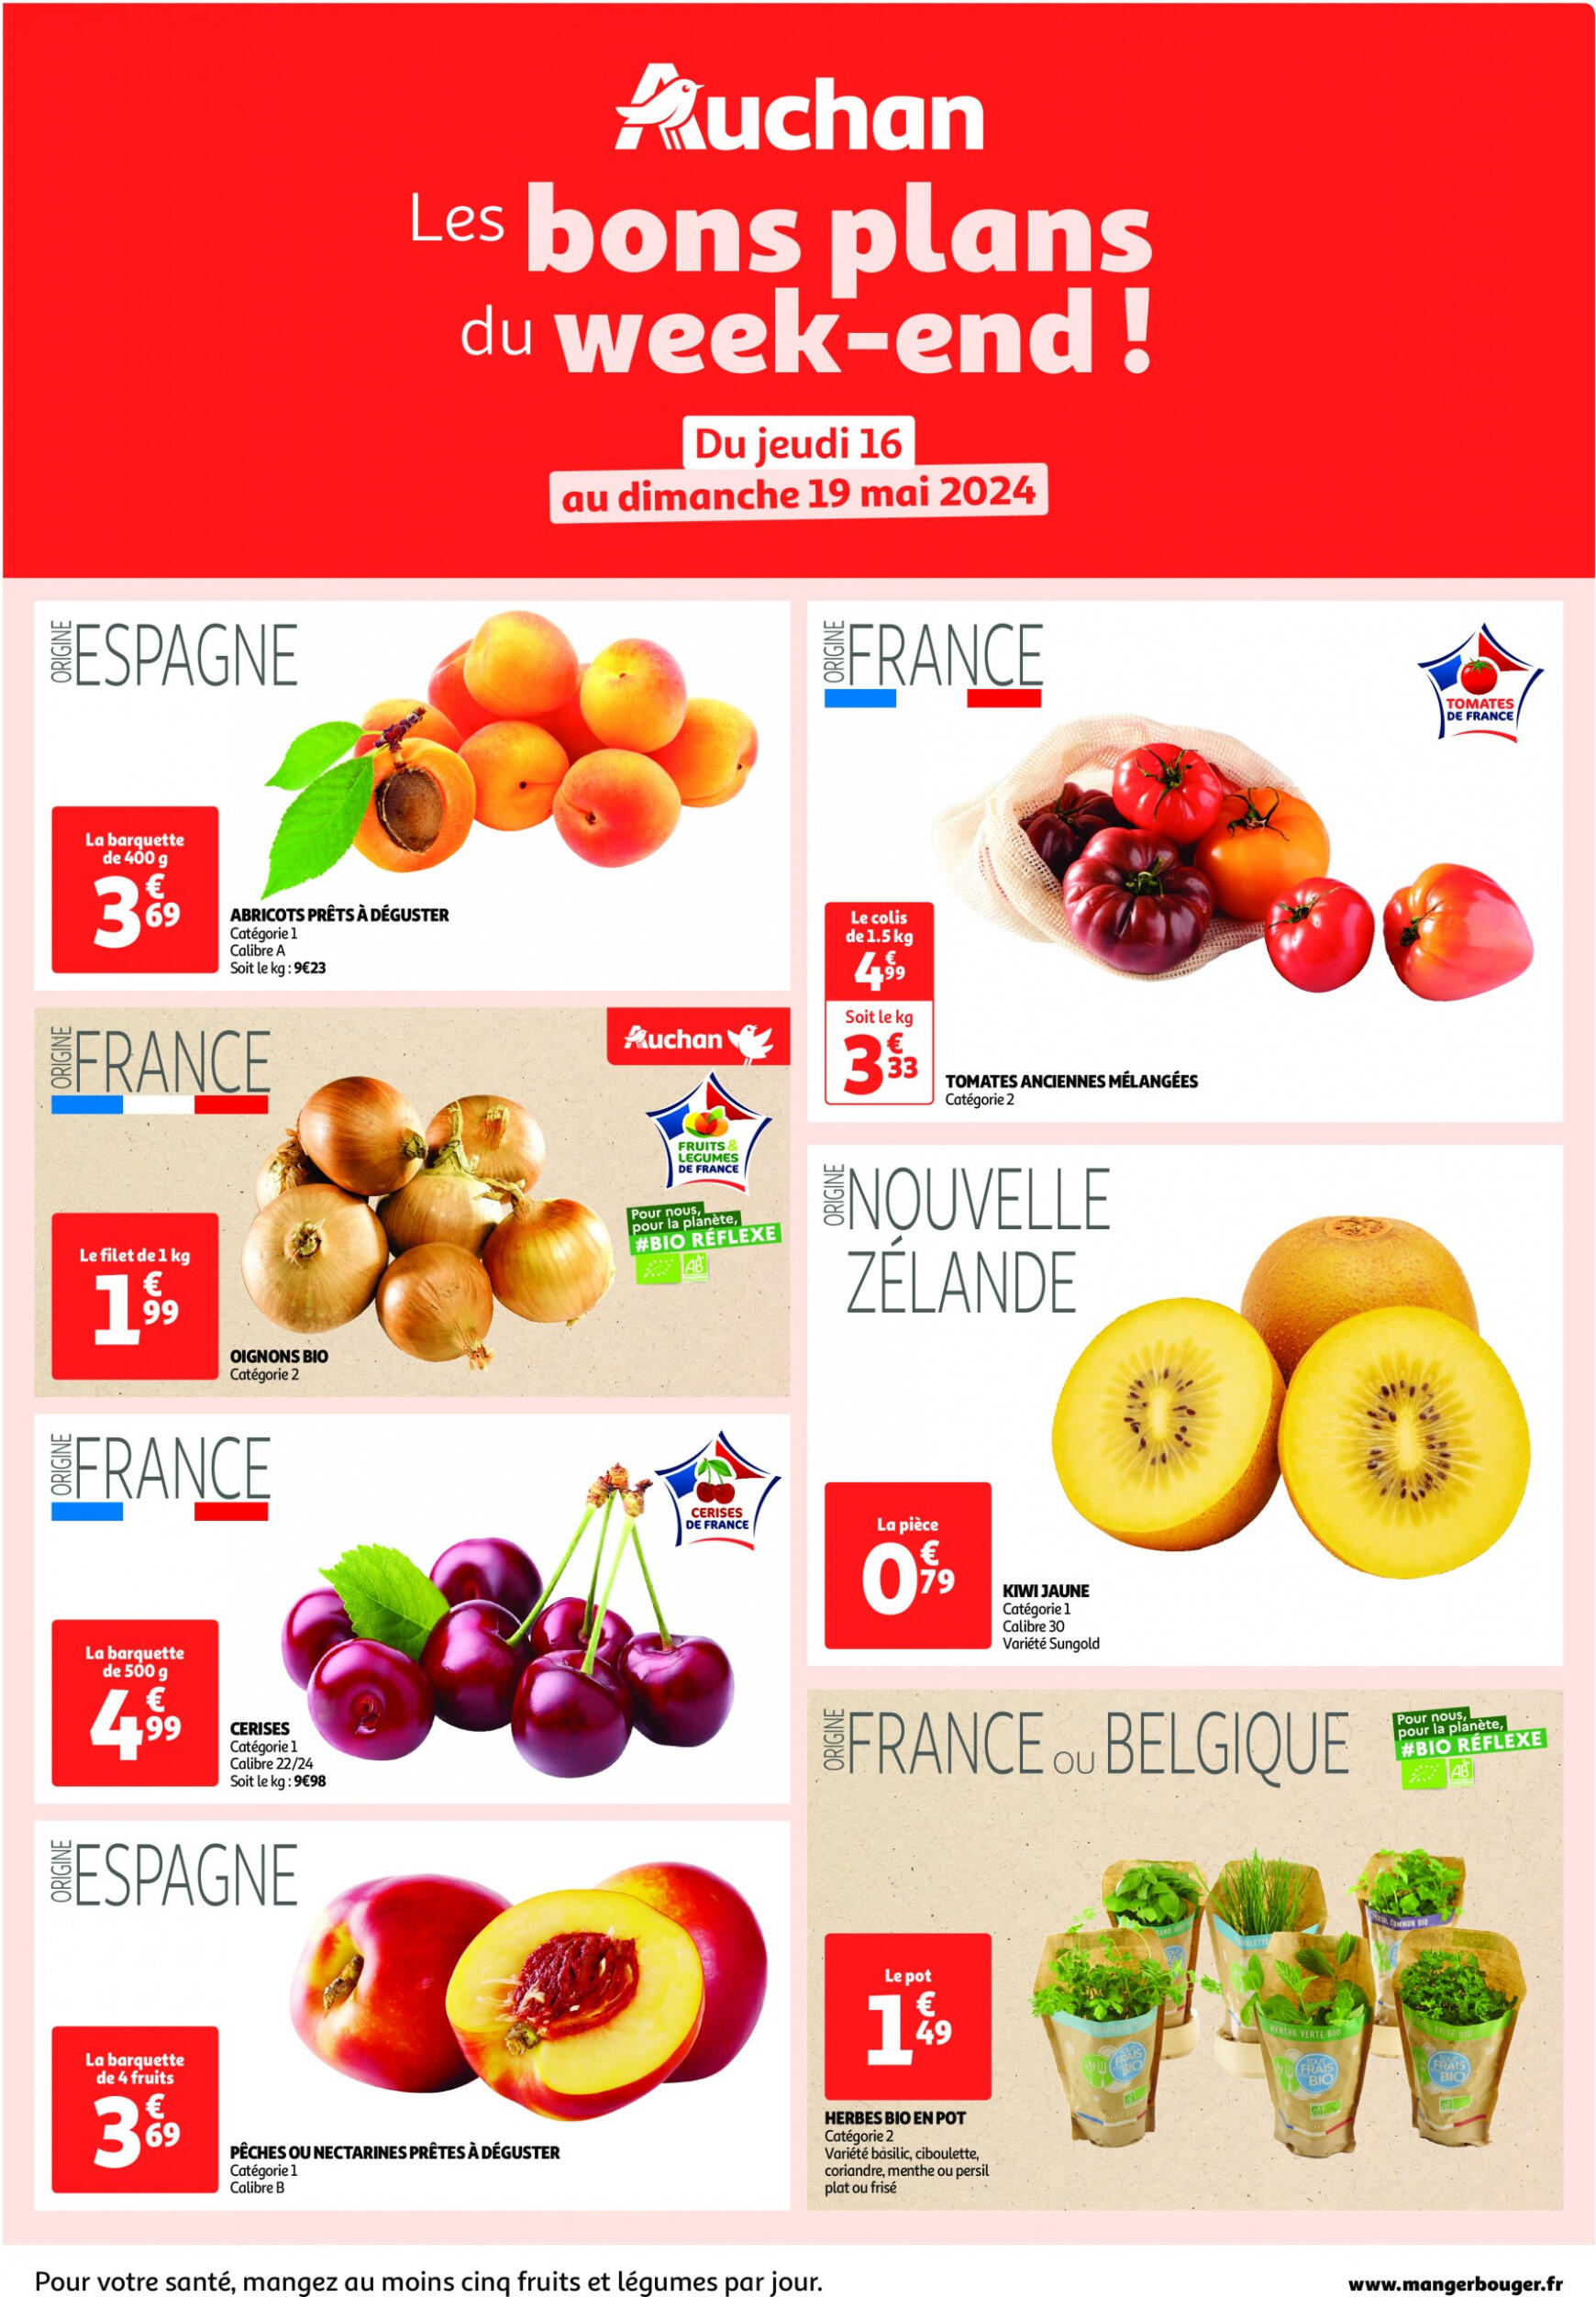 auchan - Prospectus Auchan - Les bons plans du week-end dans votre hyper actuel 16.05. - 19.05.